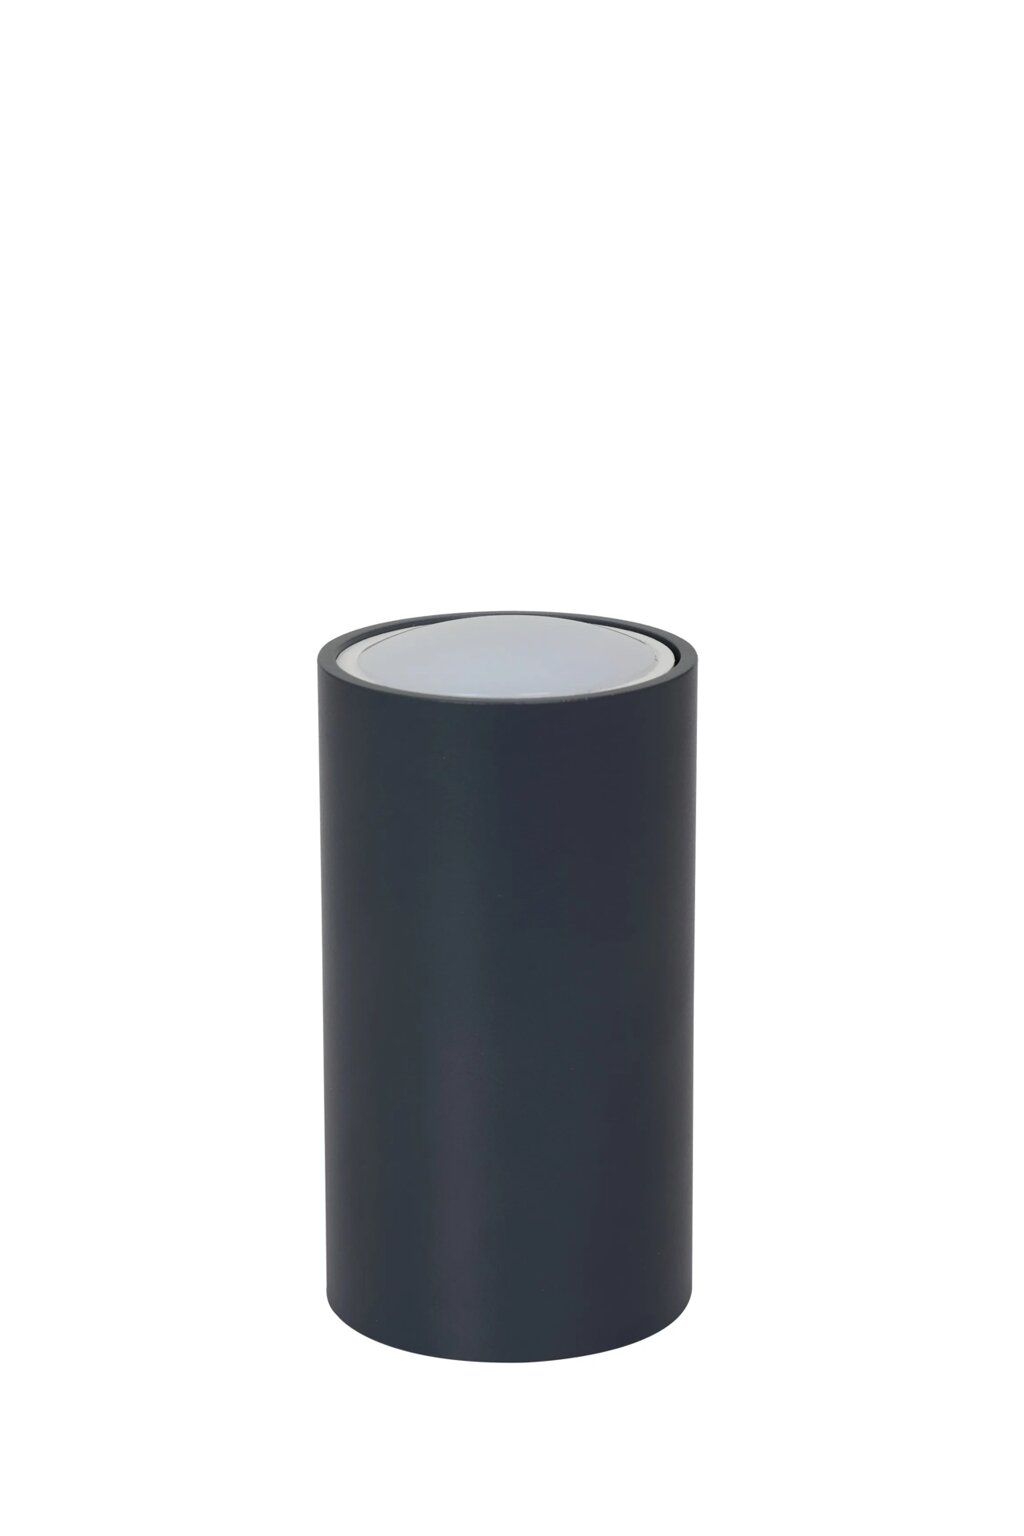 Потолочный светильник ЭРА OL15 GU10 DG, 55*100, накладной, темно-серый 1/40 от компании ООО «ТВК Ритейл» - фото 1